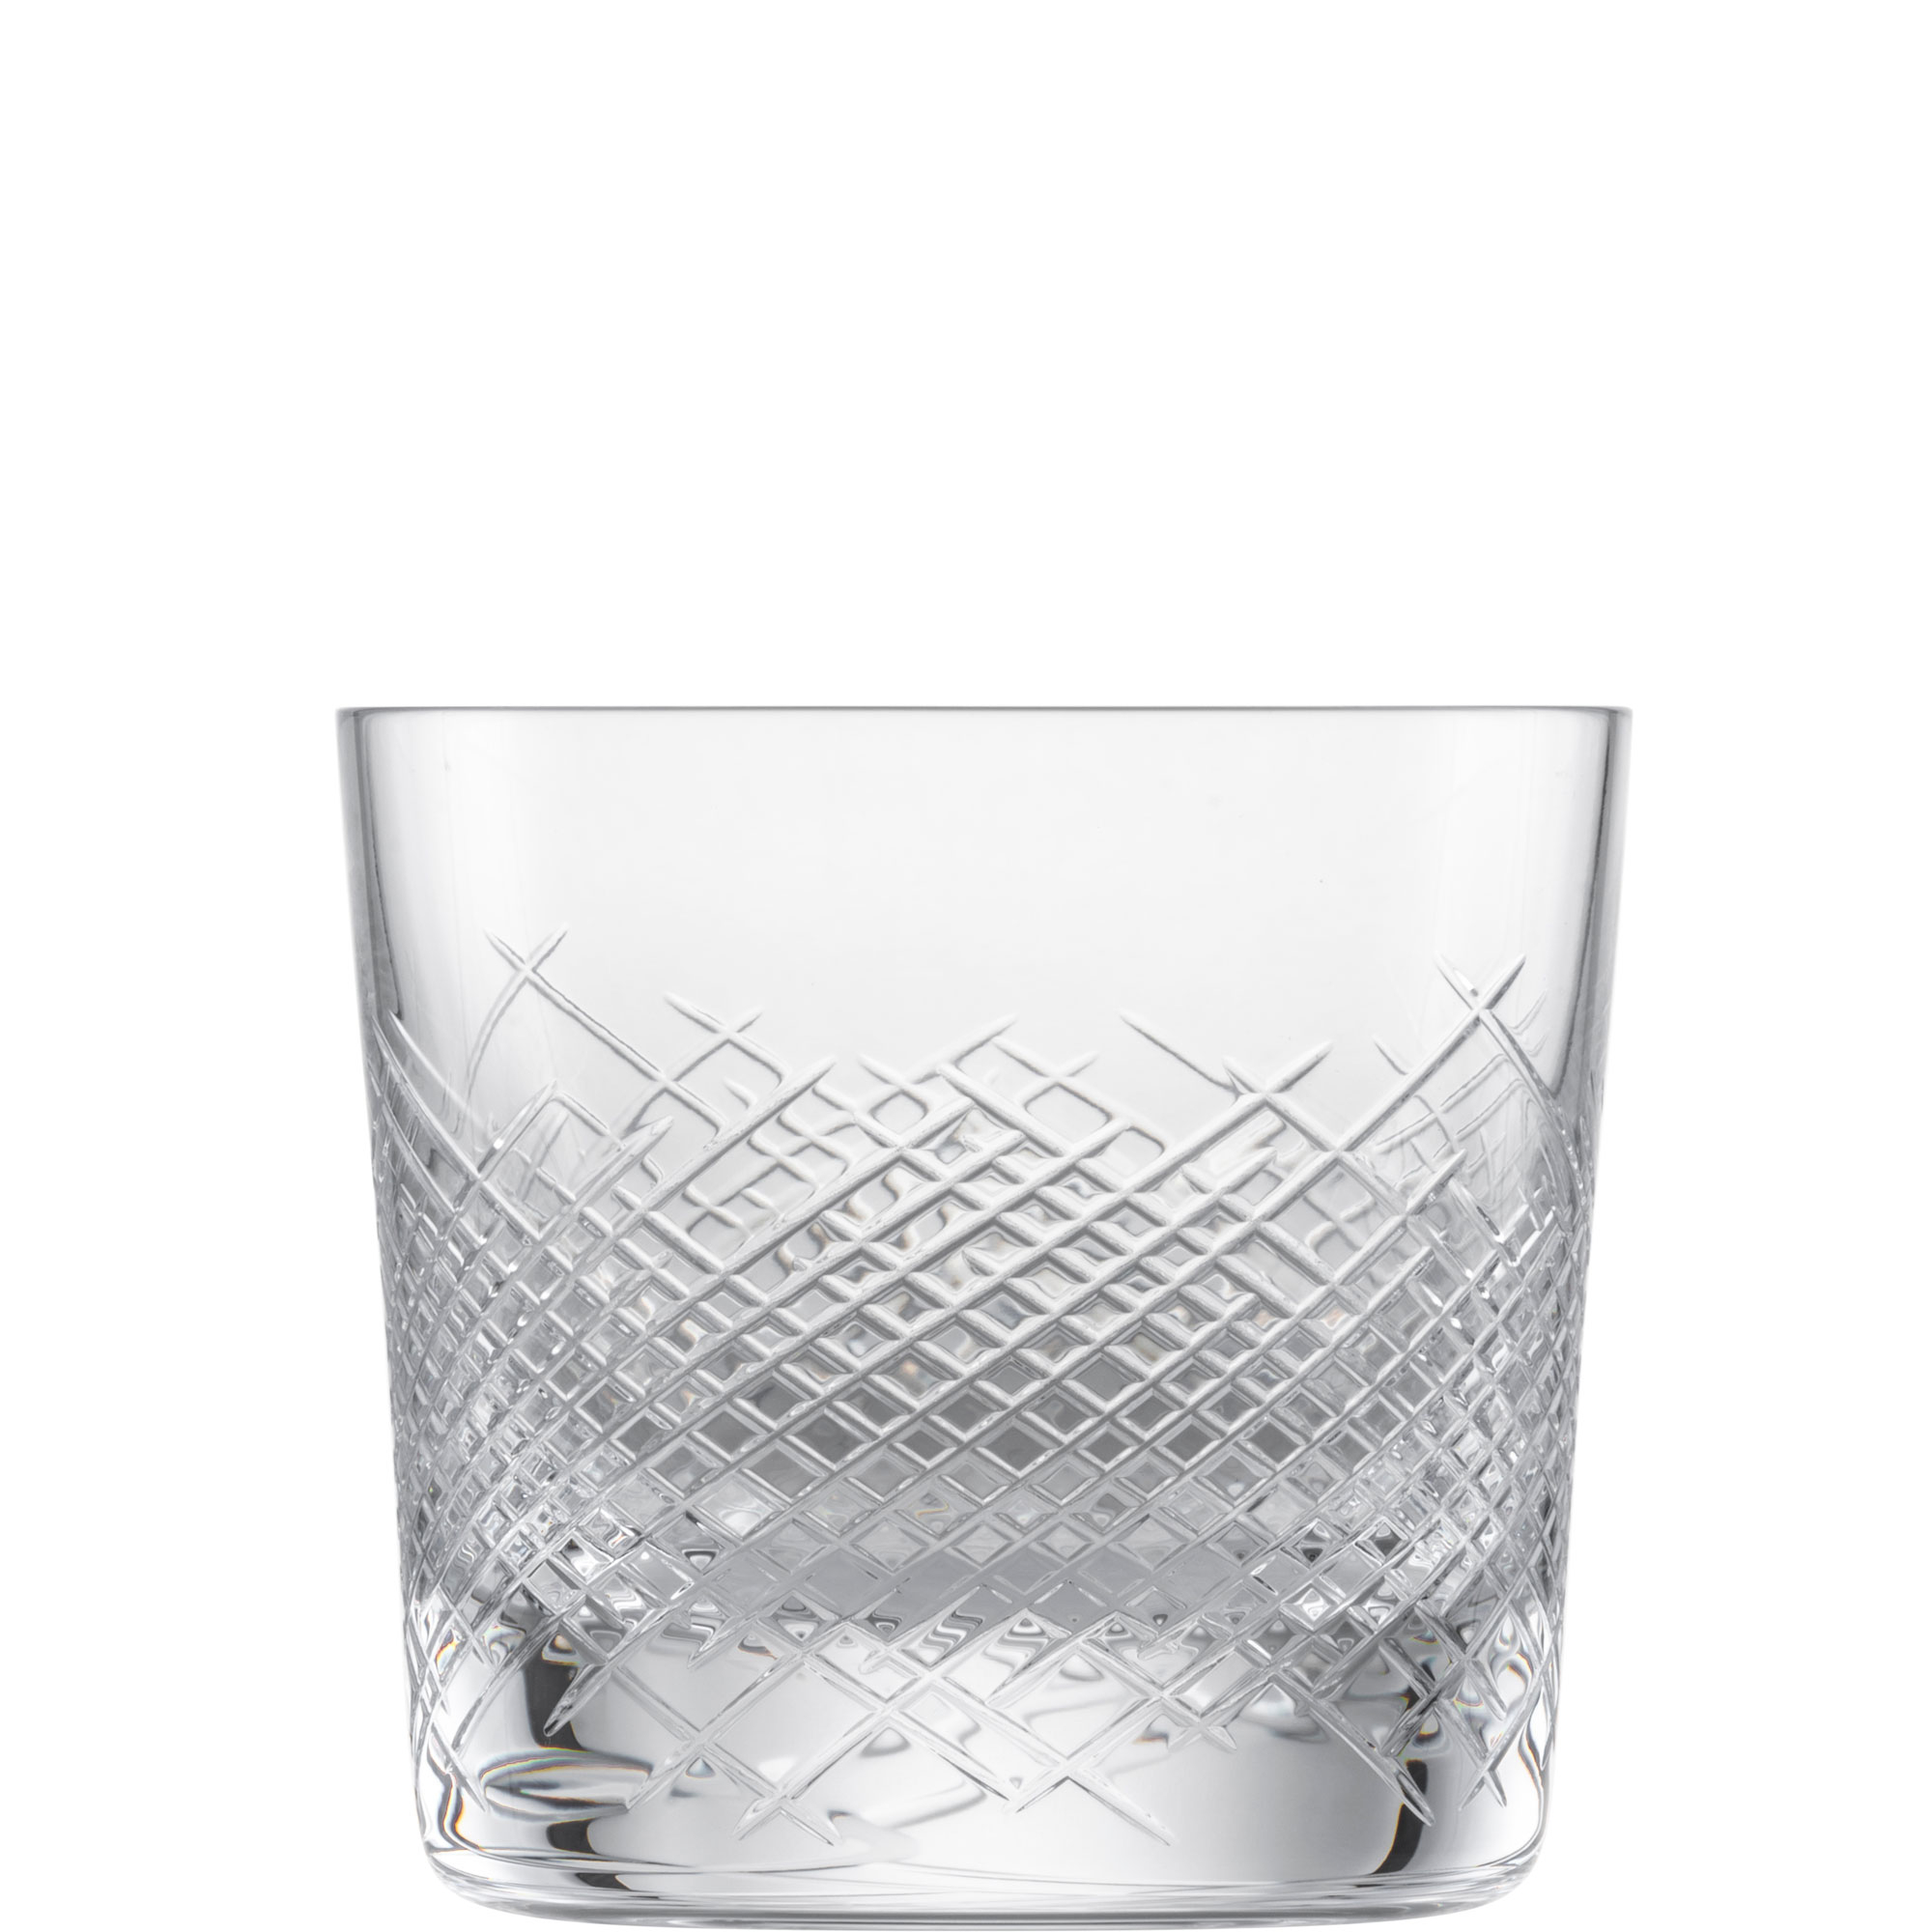 Whiskyglas Hommage Comète, Zwiesel Glas - 288ml